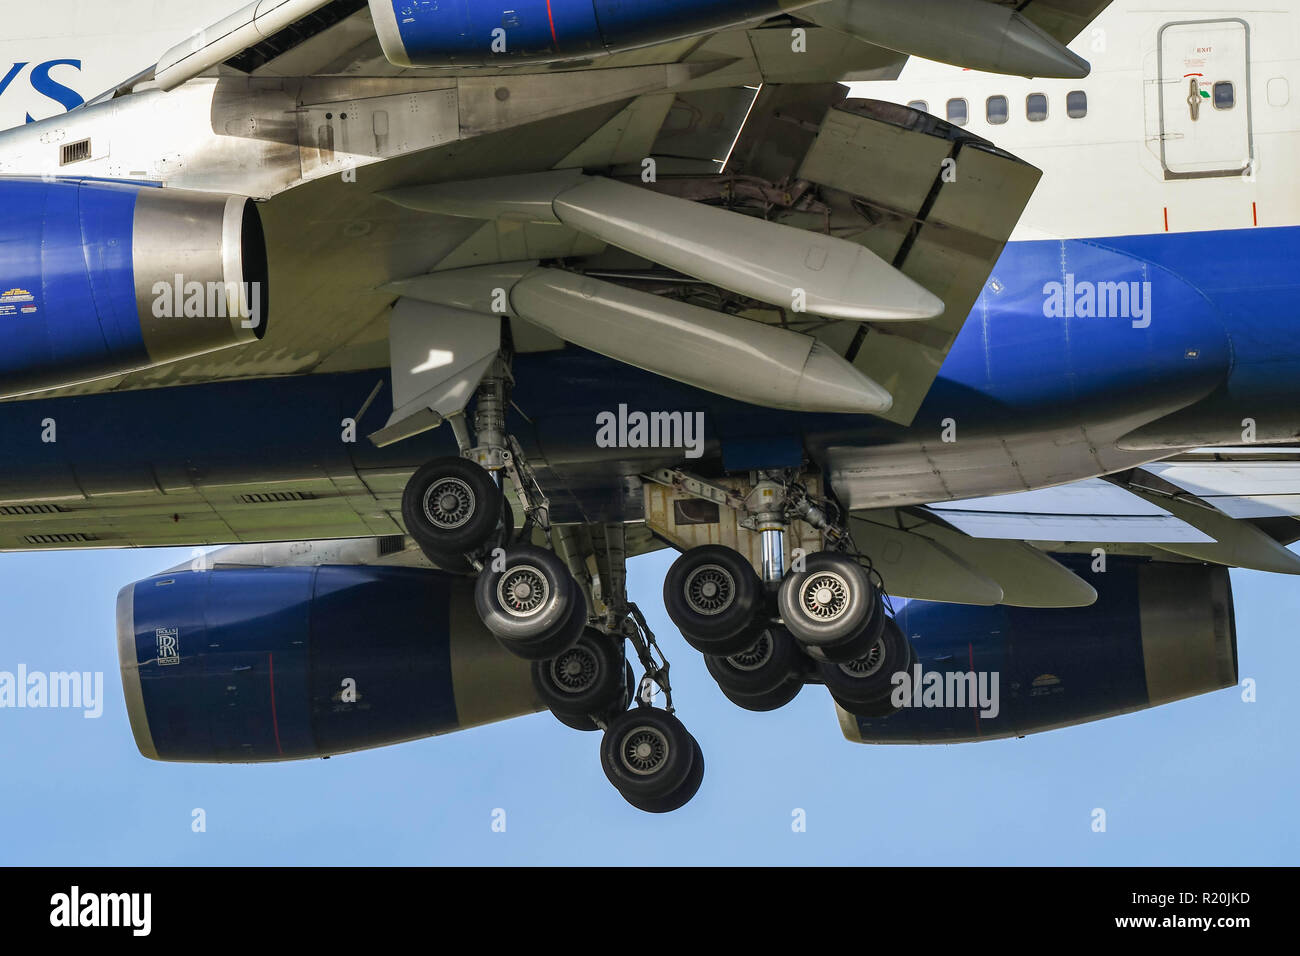 Londres, ANGLETERRE - NOVEMBRE 2018 : les roues vers le bas et volets sortis sur un Boeing 747 jumbo jet' 'à mesure qu'il arrive à la terre à l'aéroport de Londres Heathrow Banque D'Images